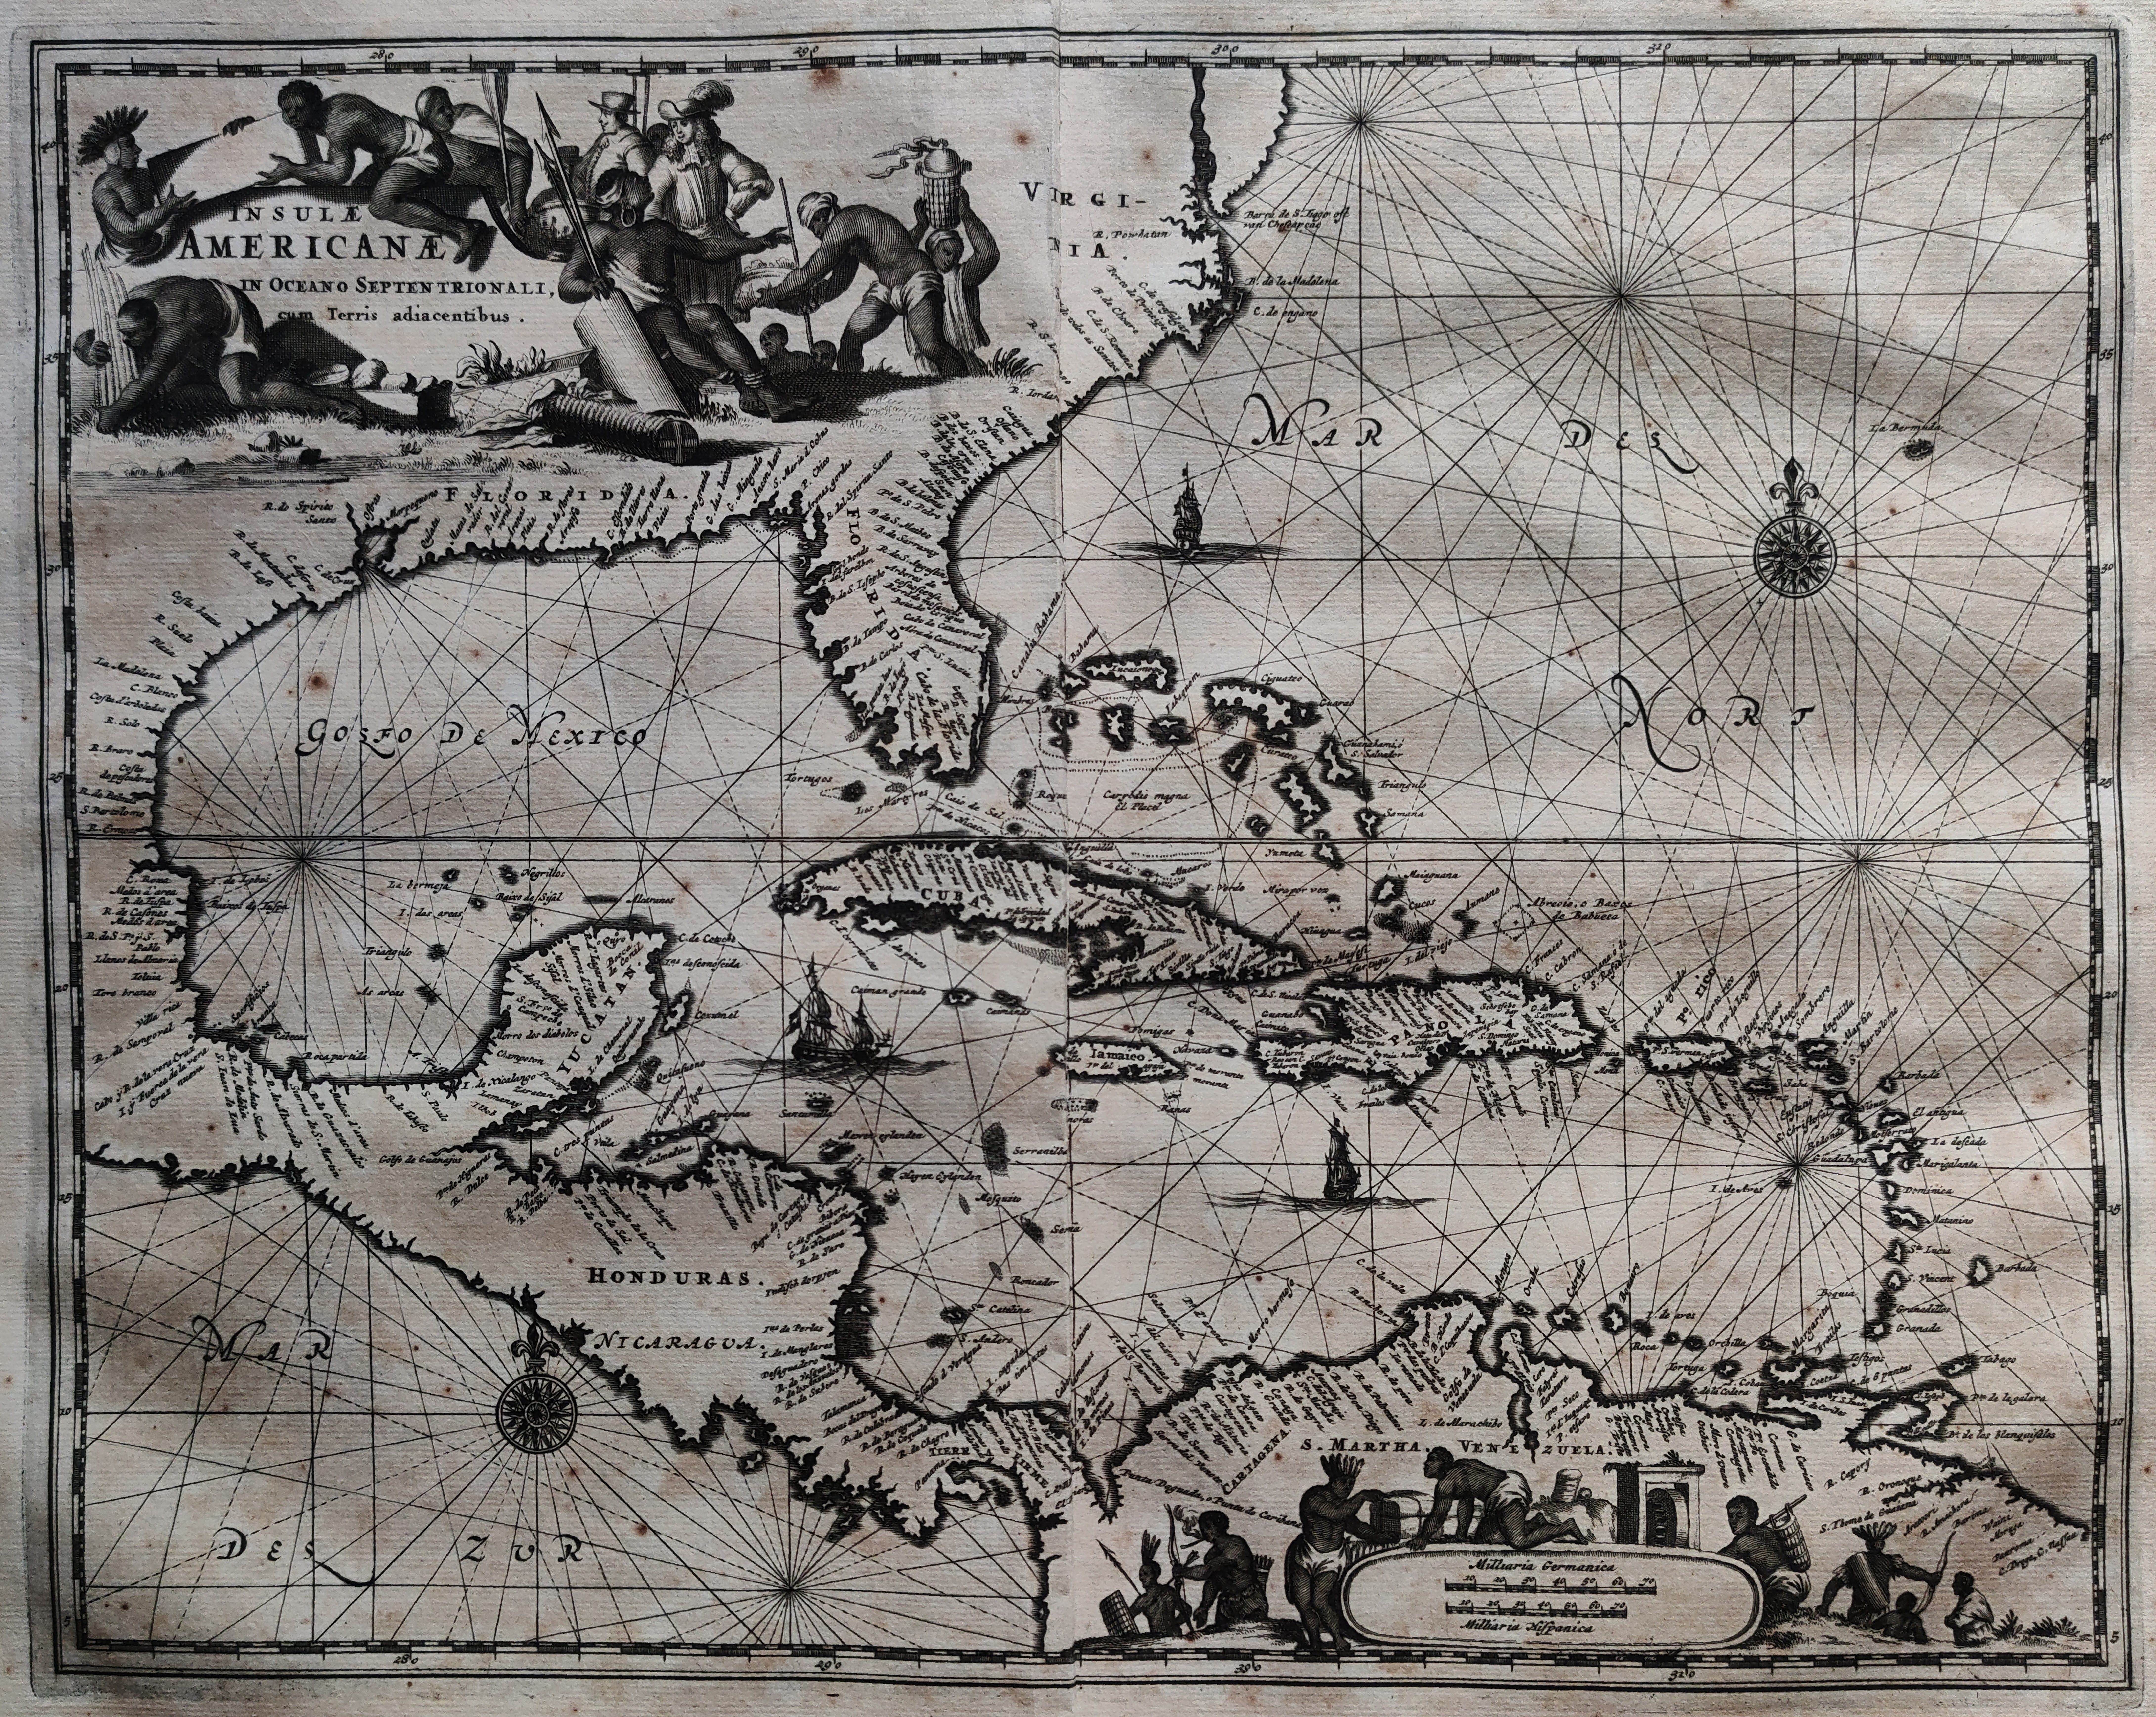 Insulae Americanae in Oceano Septentrionali, cum Terris adiacentibus.